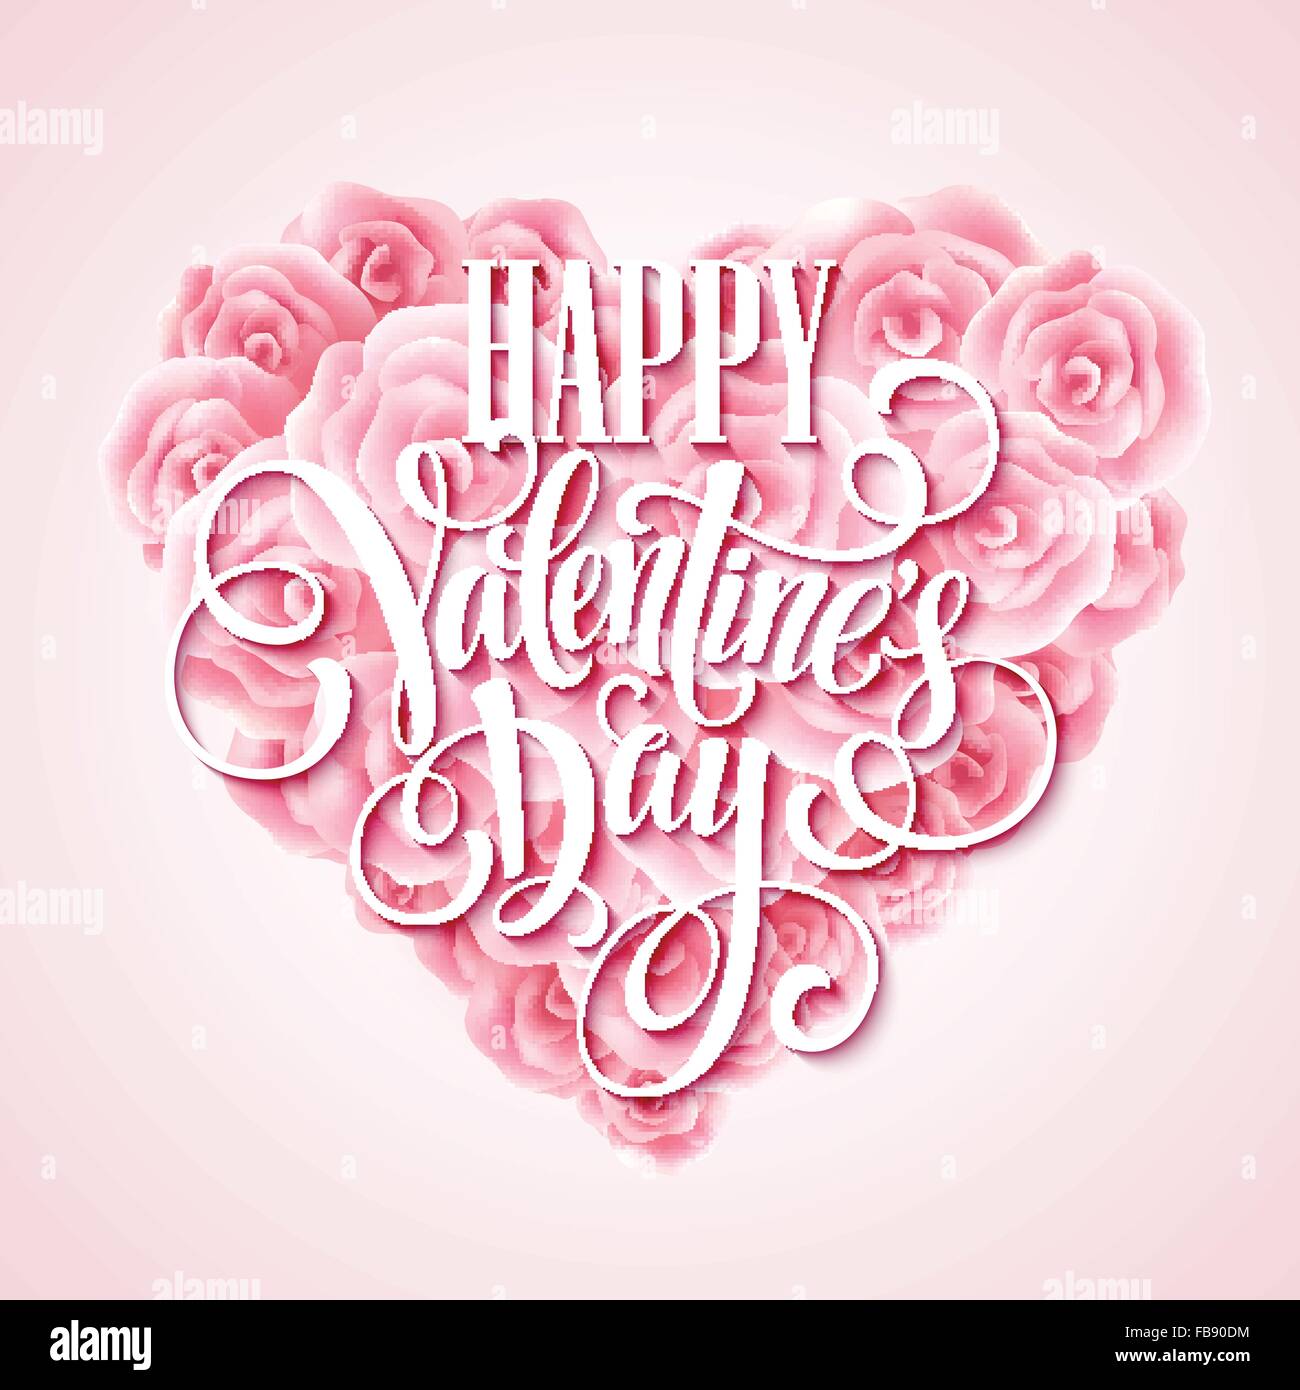 Valentine-Karte mit rosa Herz und kalligraphischen Schriftzug. Vektor-illustration Stock Vektor